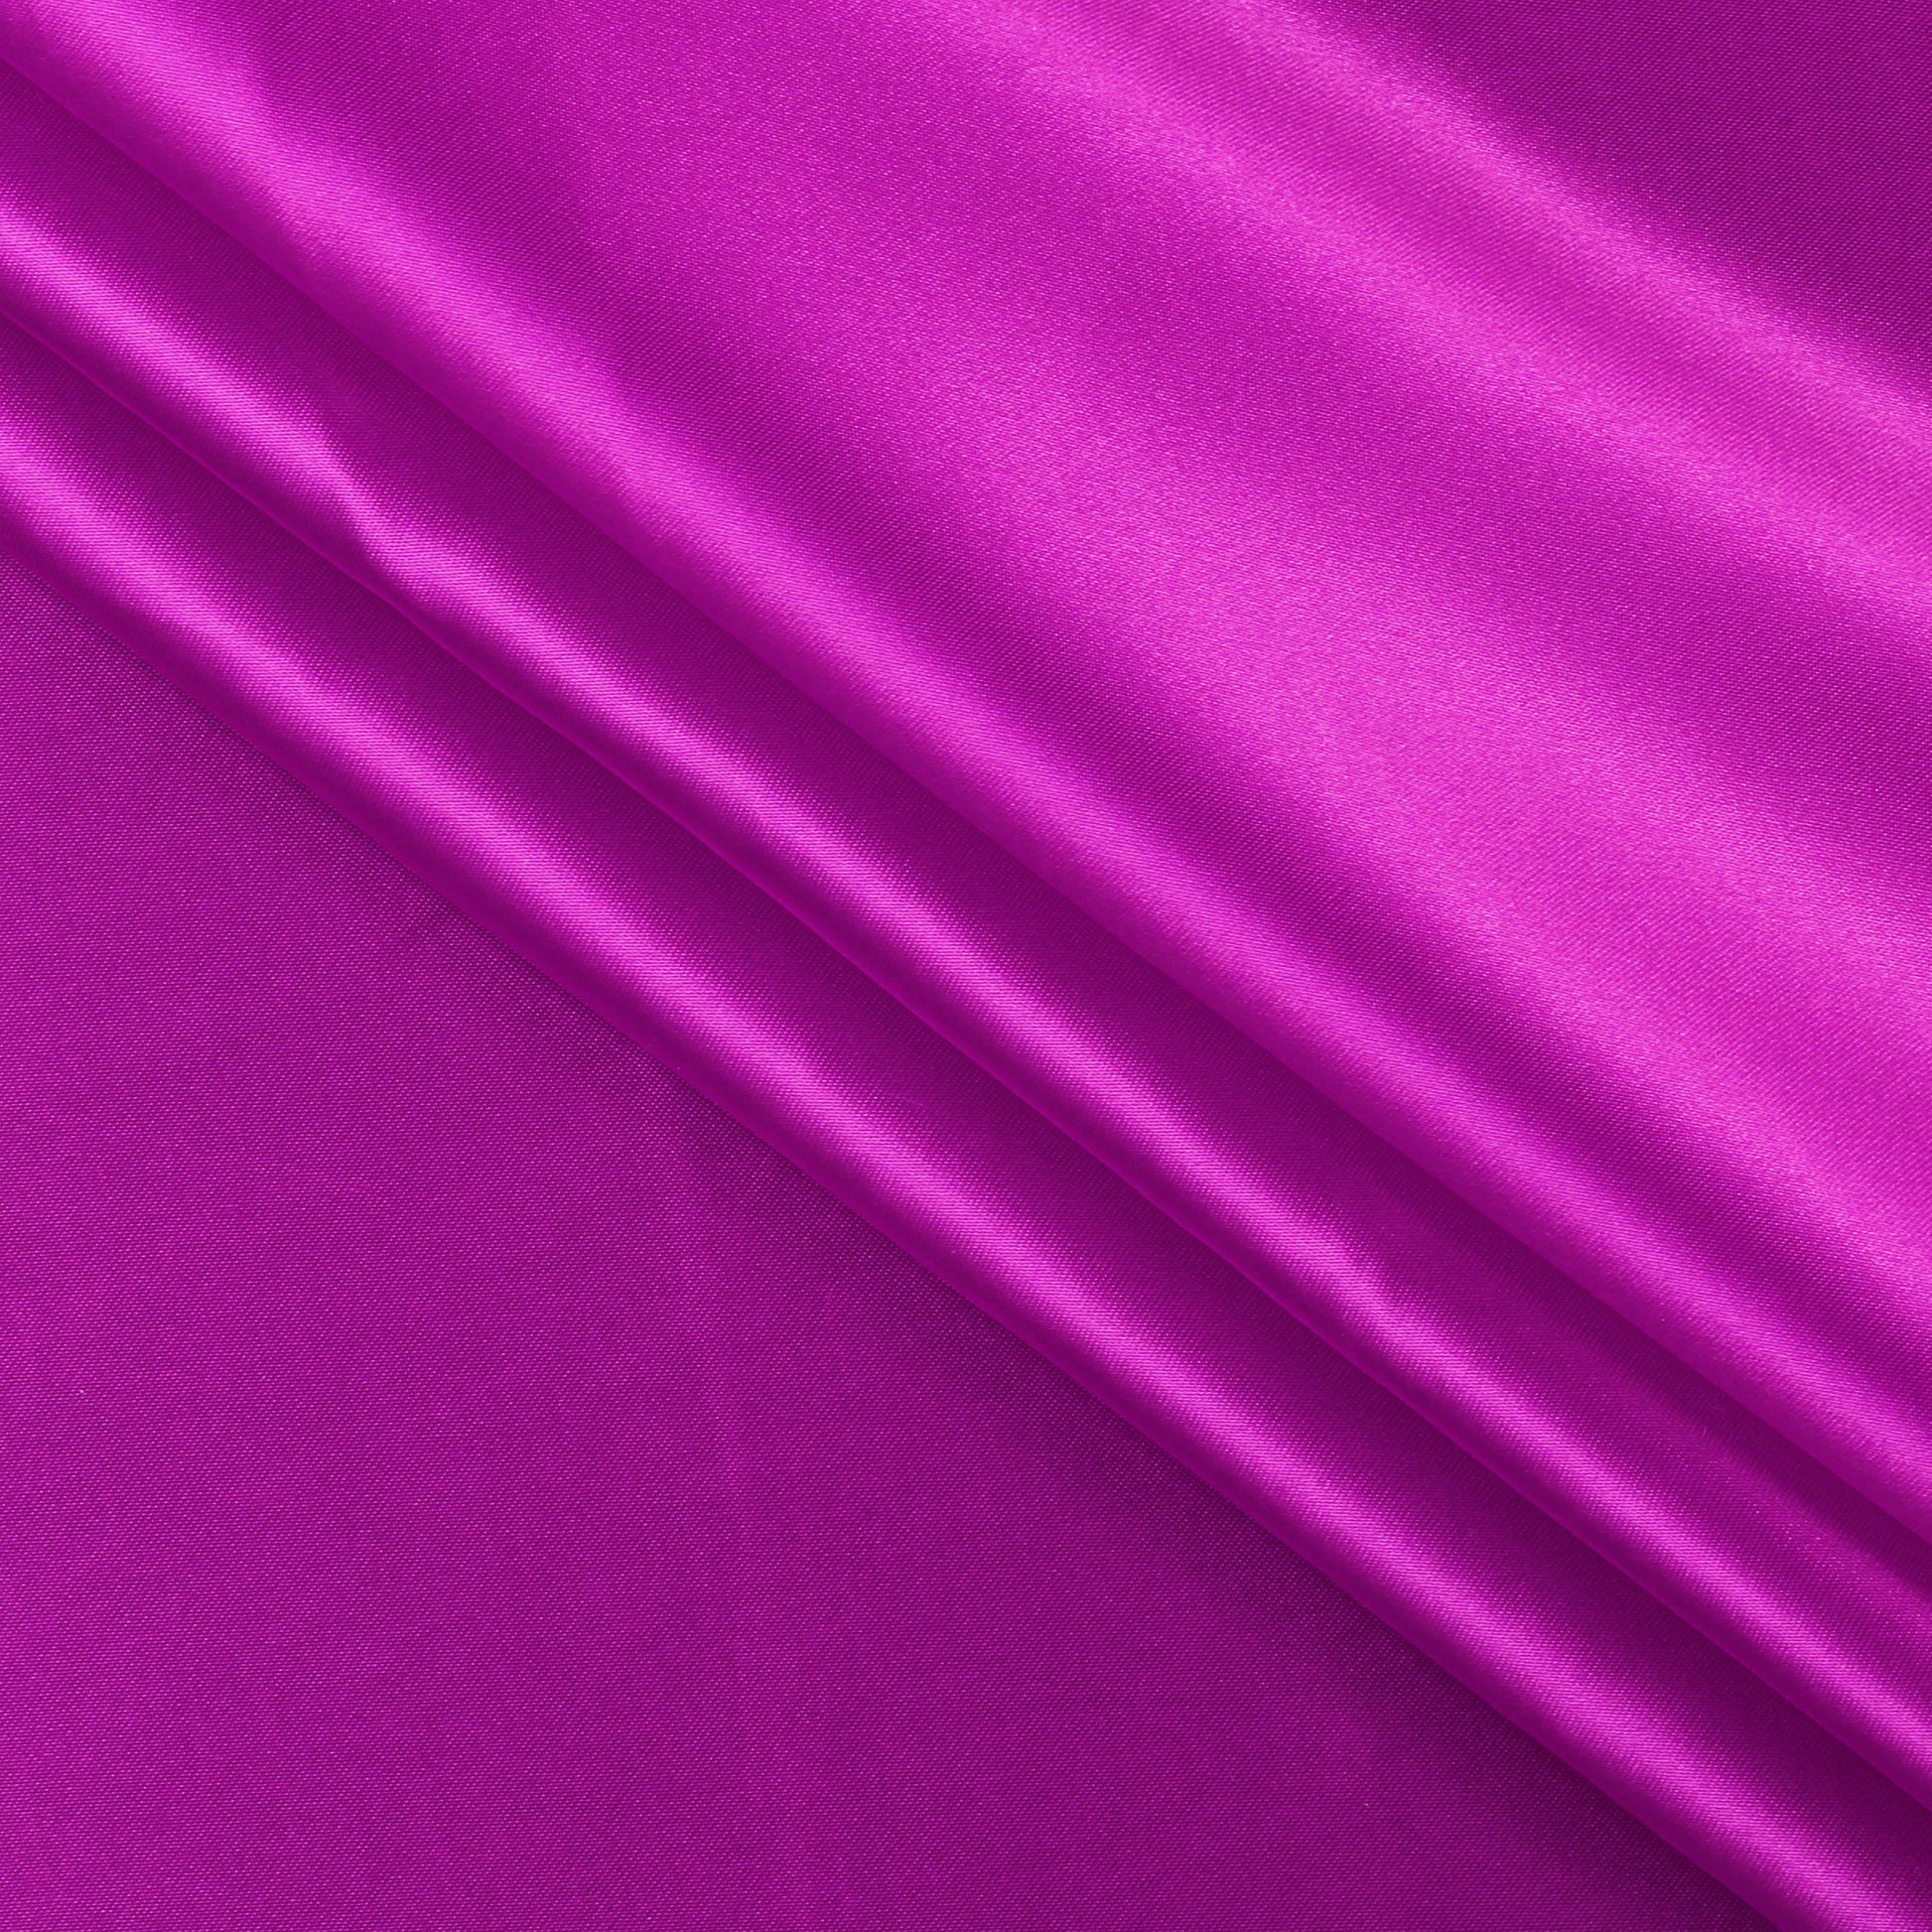 Magenta Violet,16fd6ac1-45b3-4996-8a7e-3eb1ad0bd334